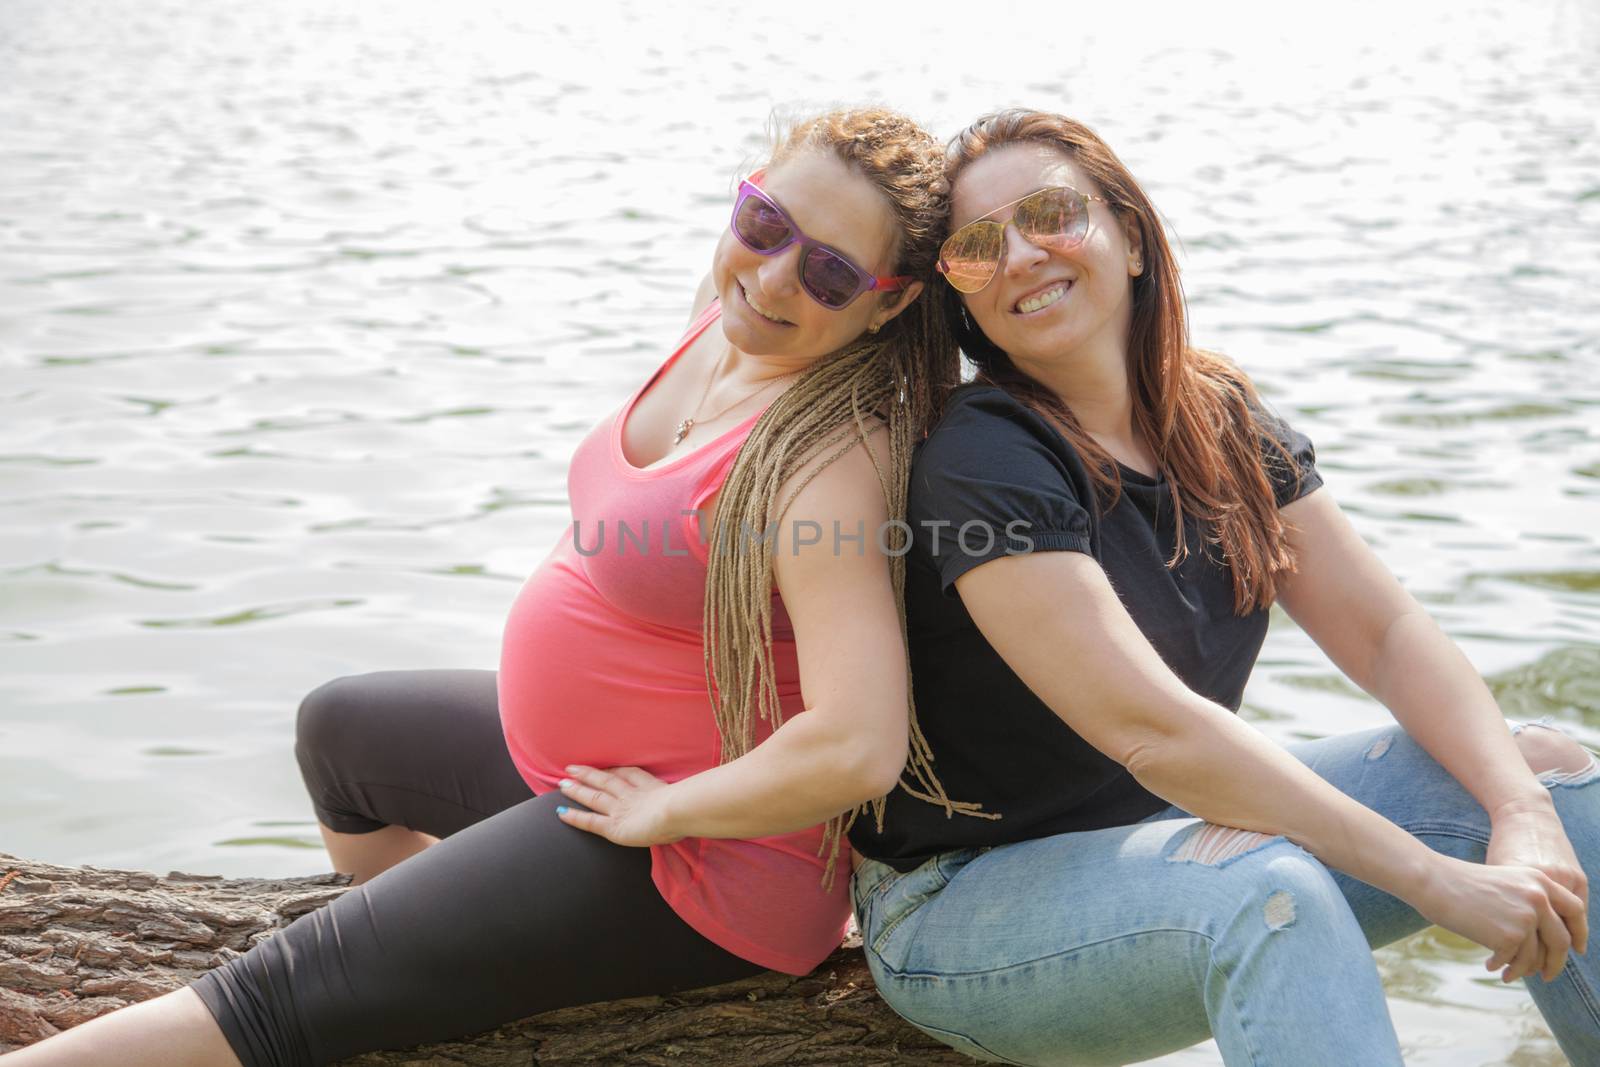 Pregnant Woman Girlfriend by vilevi